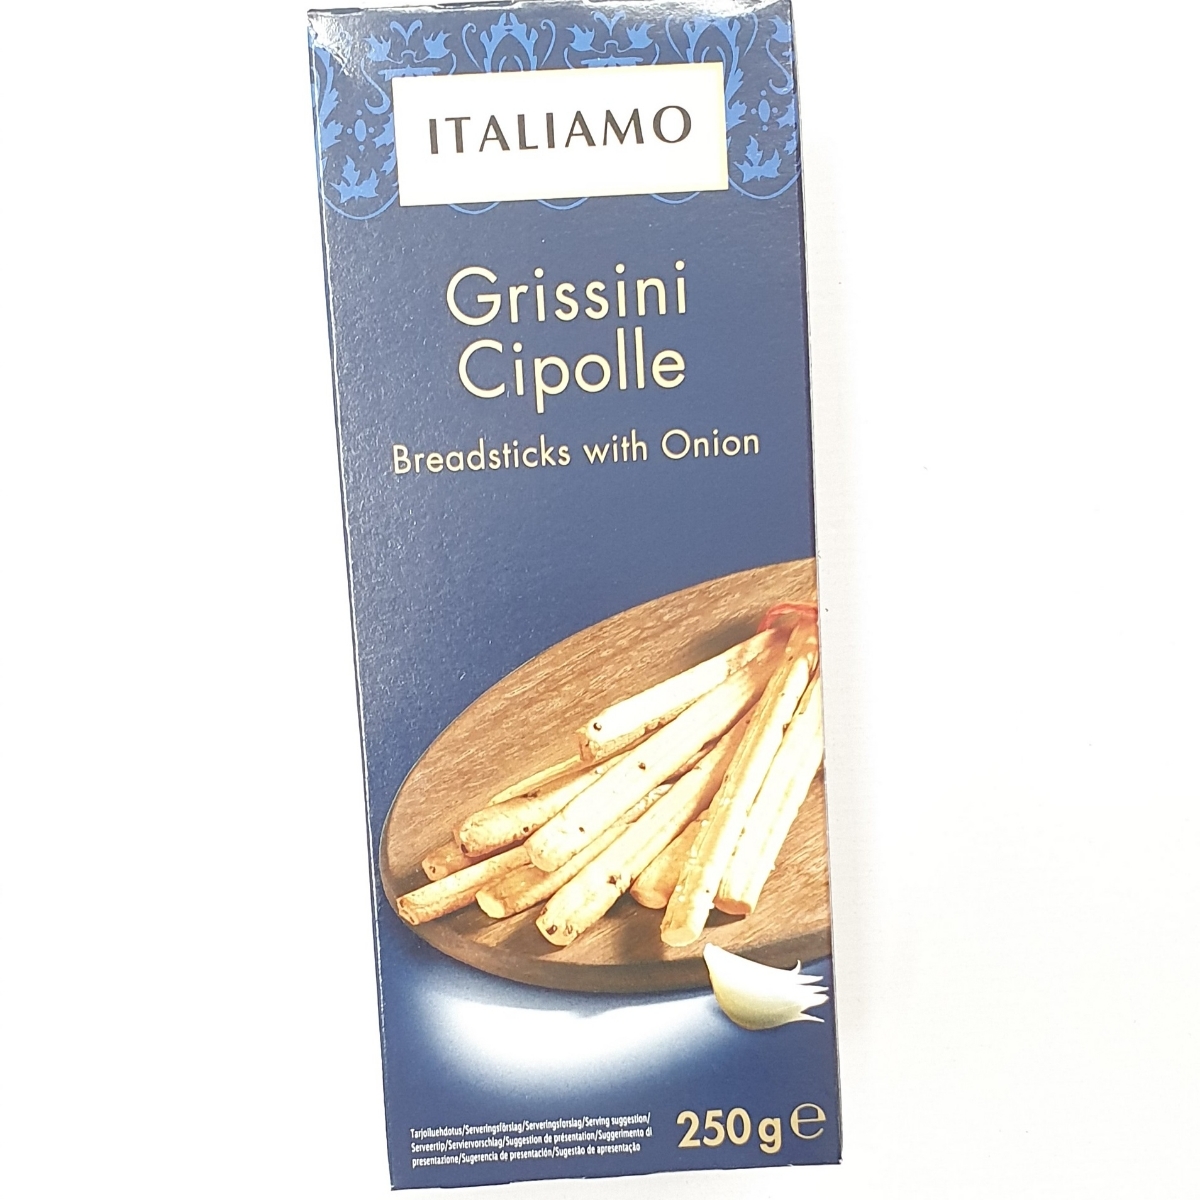 Italiamo Grissini Cipolle Review | abillion